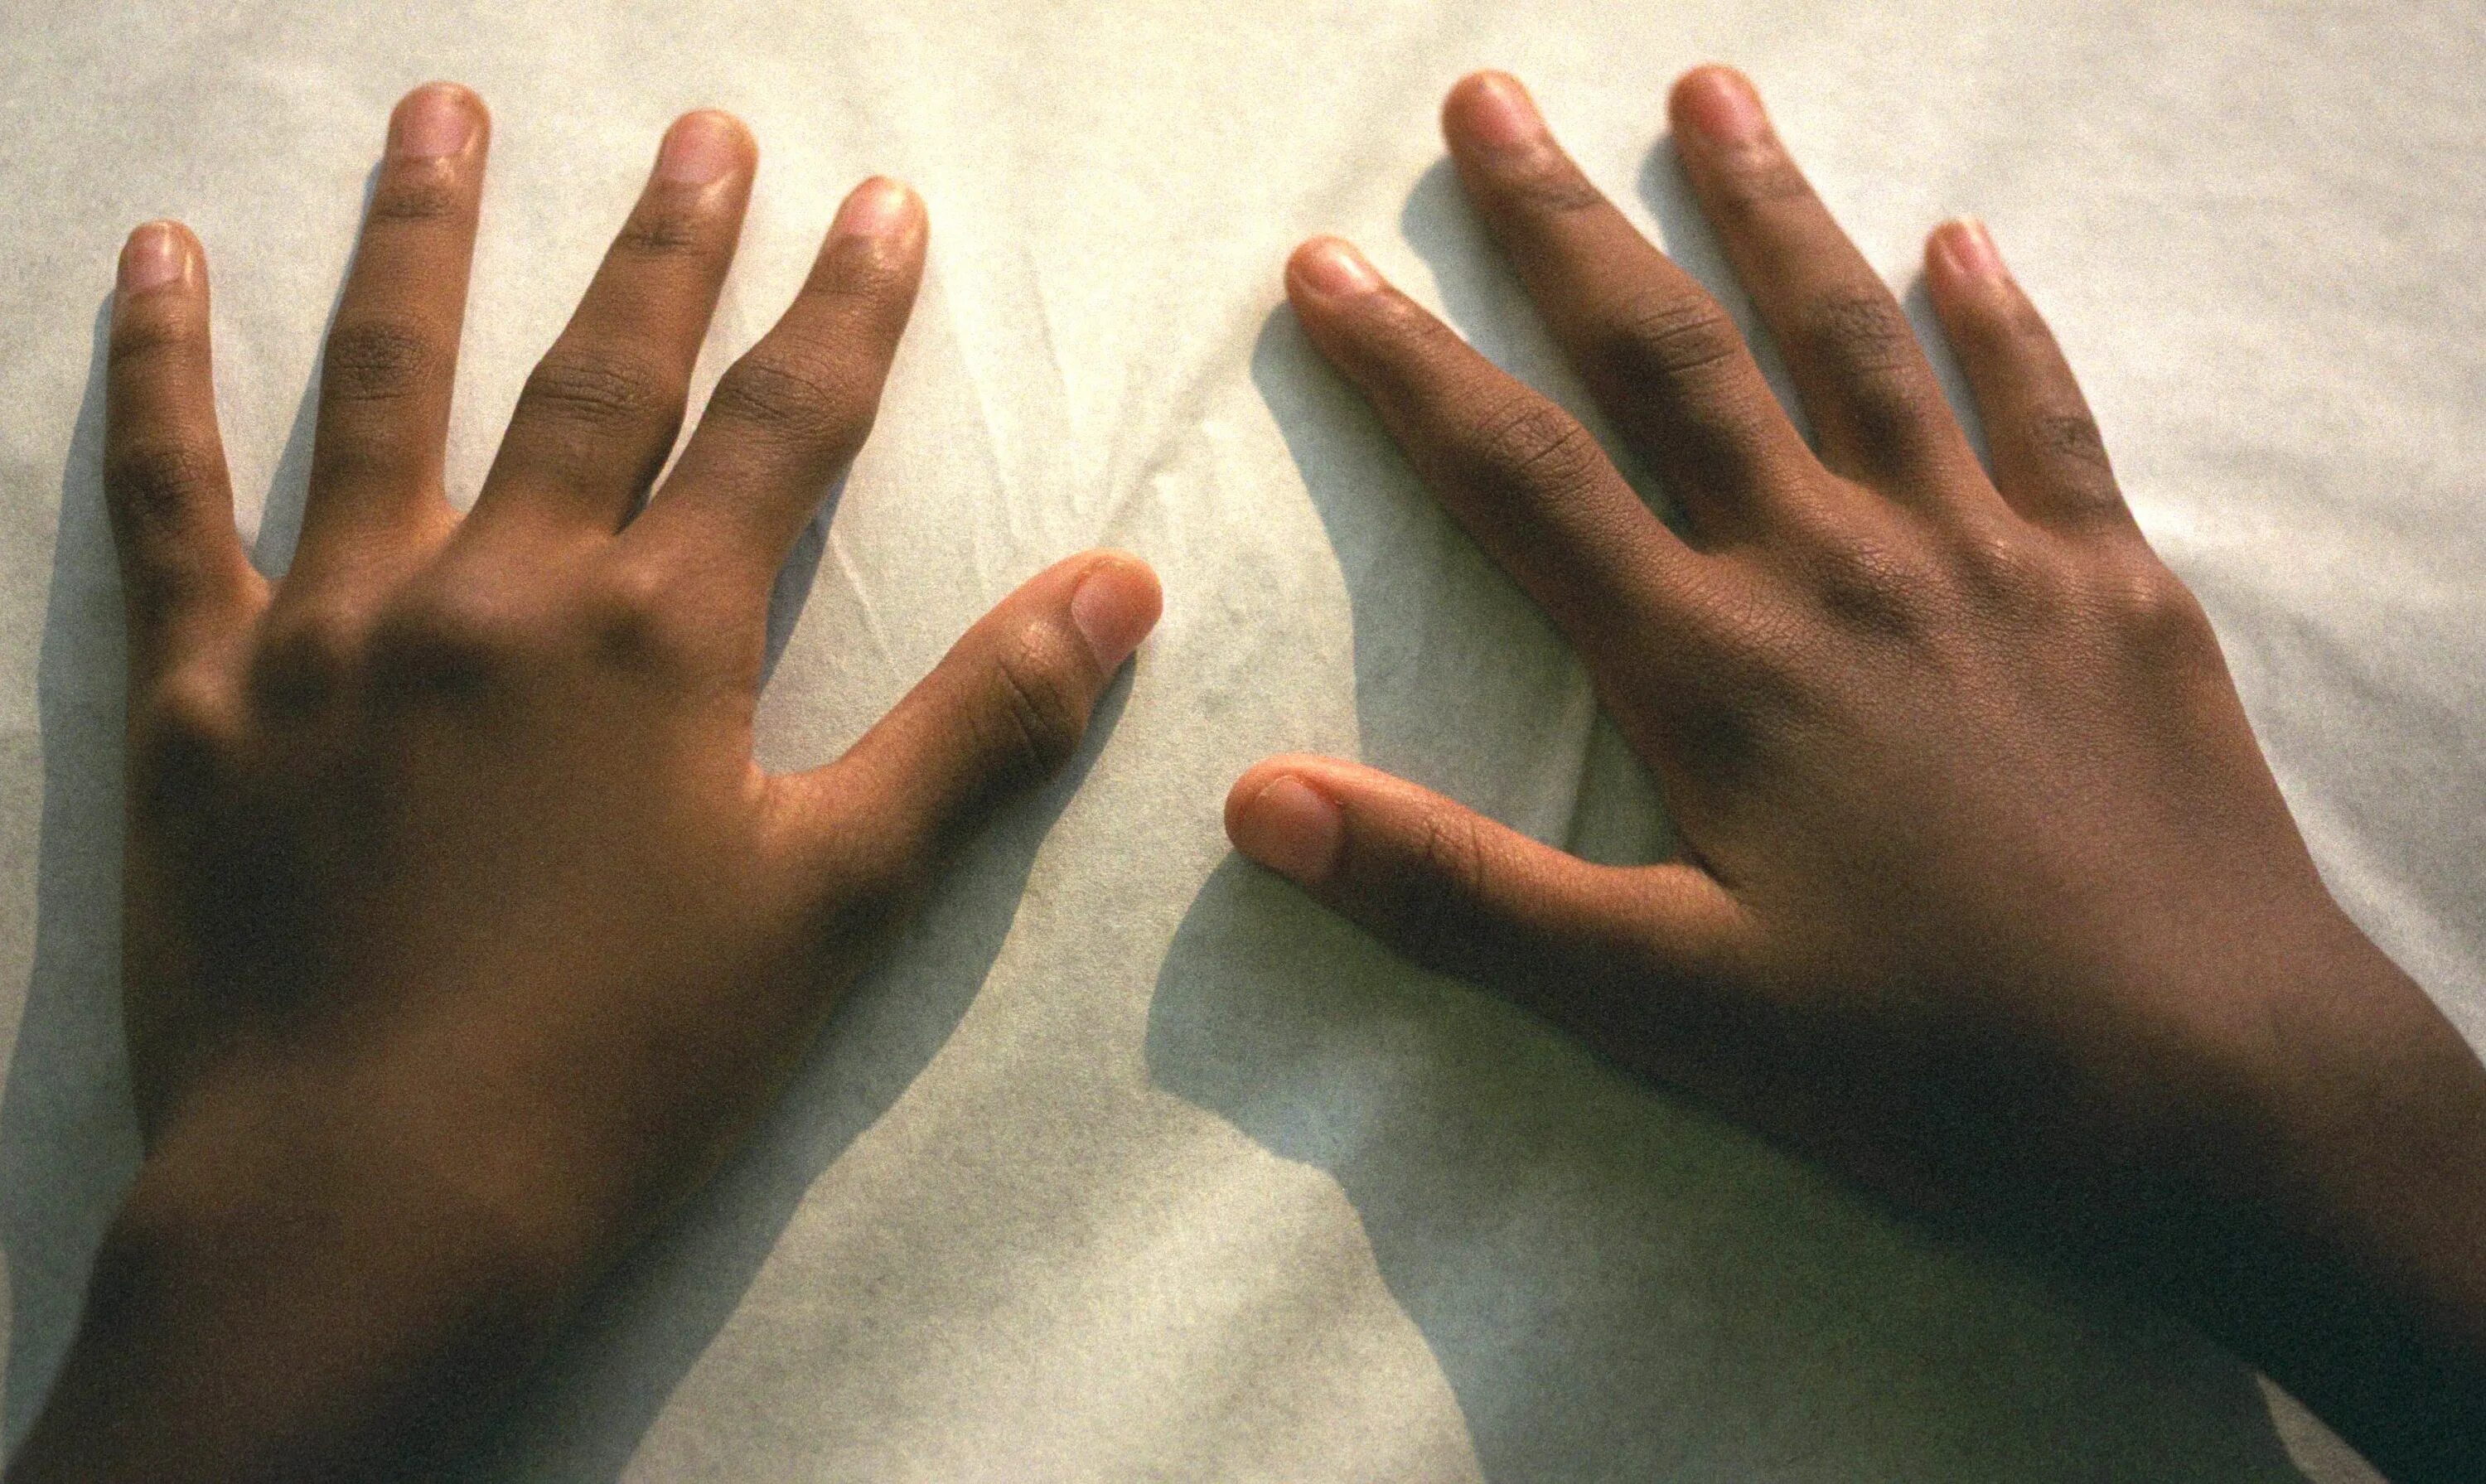 Изменения кисти рук. Ревматоидным артритом Рейно. Ювенильный ревматоидный артрит кистей рук. Ревматоидный артрит синдром Рейно. Подагра ревматоидный артрит кистей.